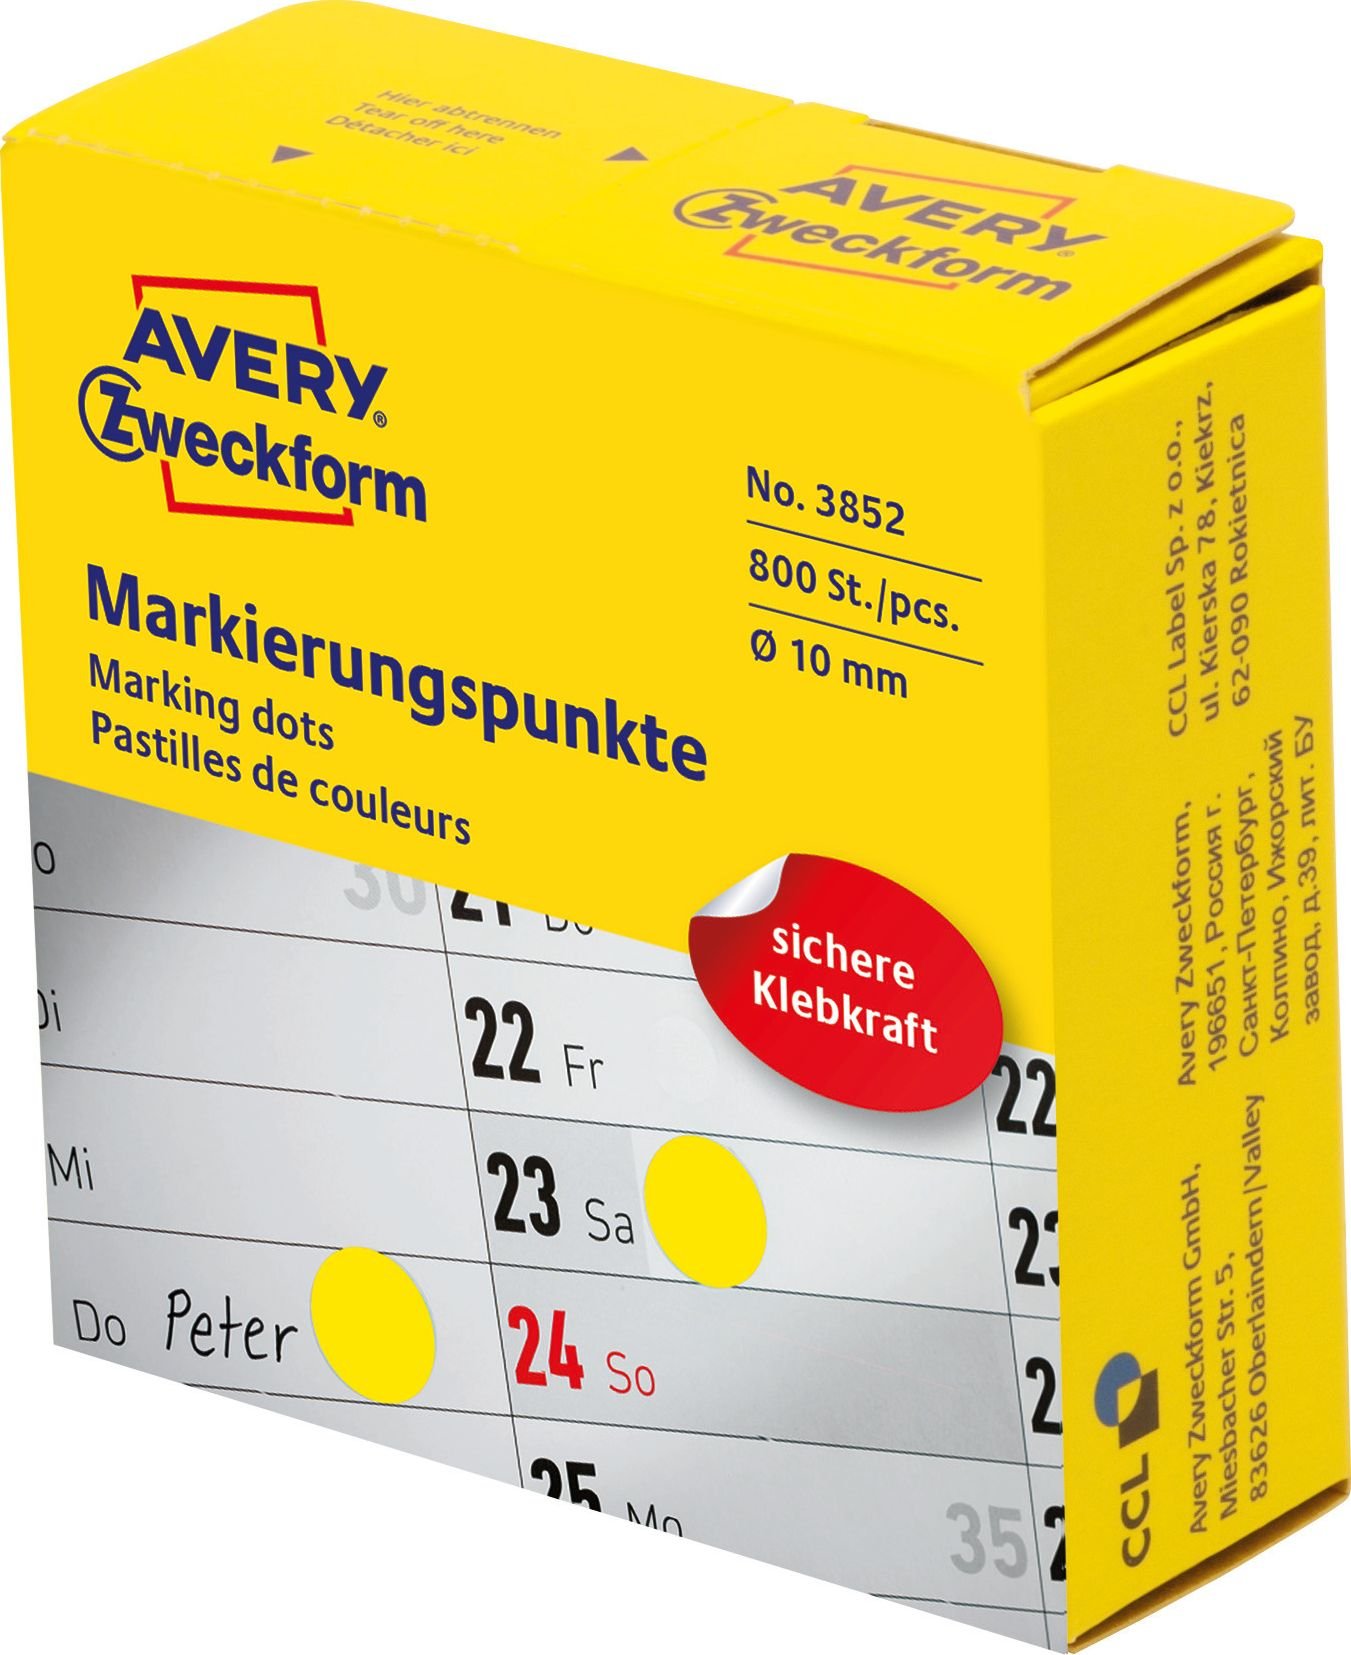 Cercuri de marcare Avery Zweckform în dozator Avery Zweckform, 800 buc/rolă, Ø10 mm, Galben, GALBEN